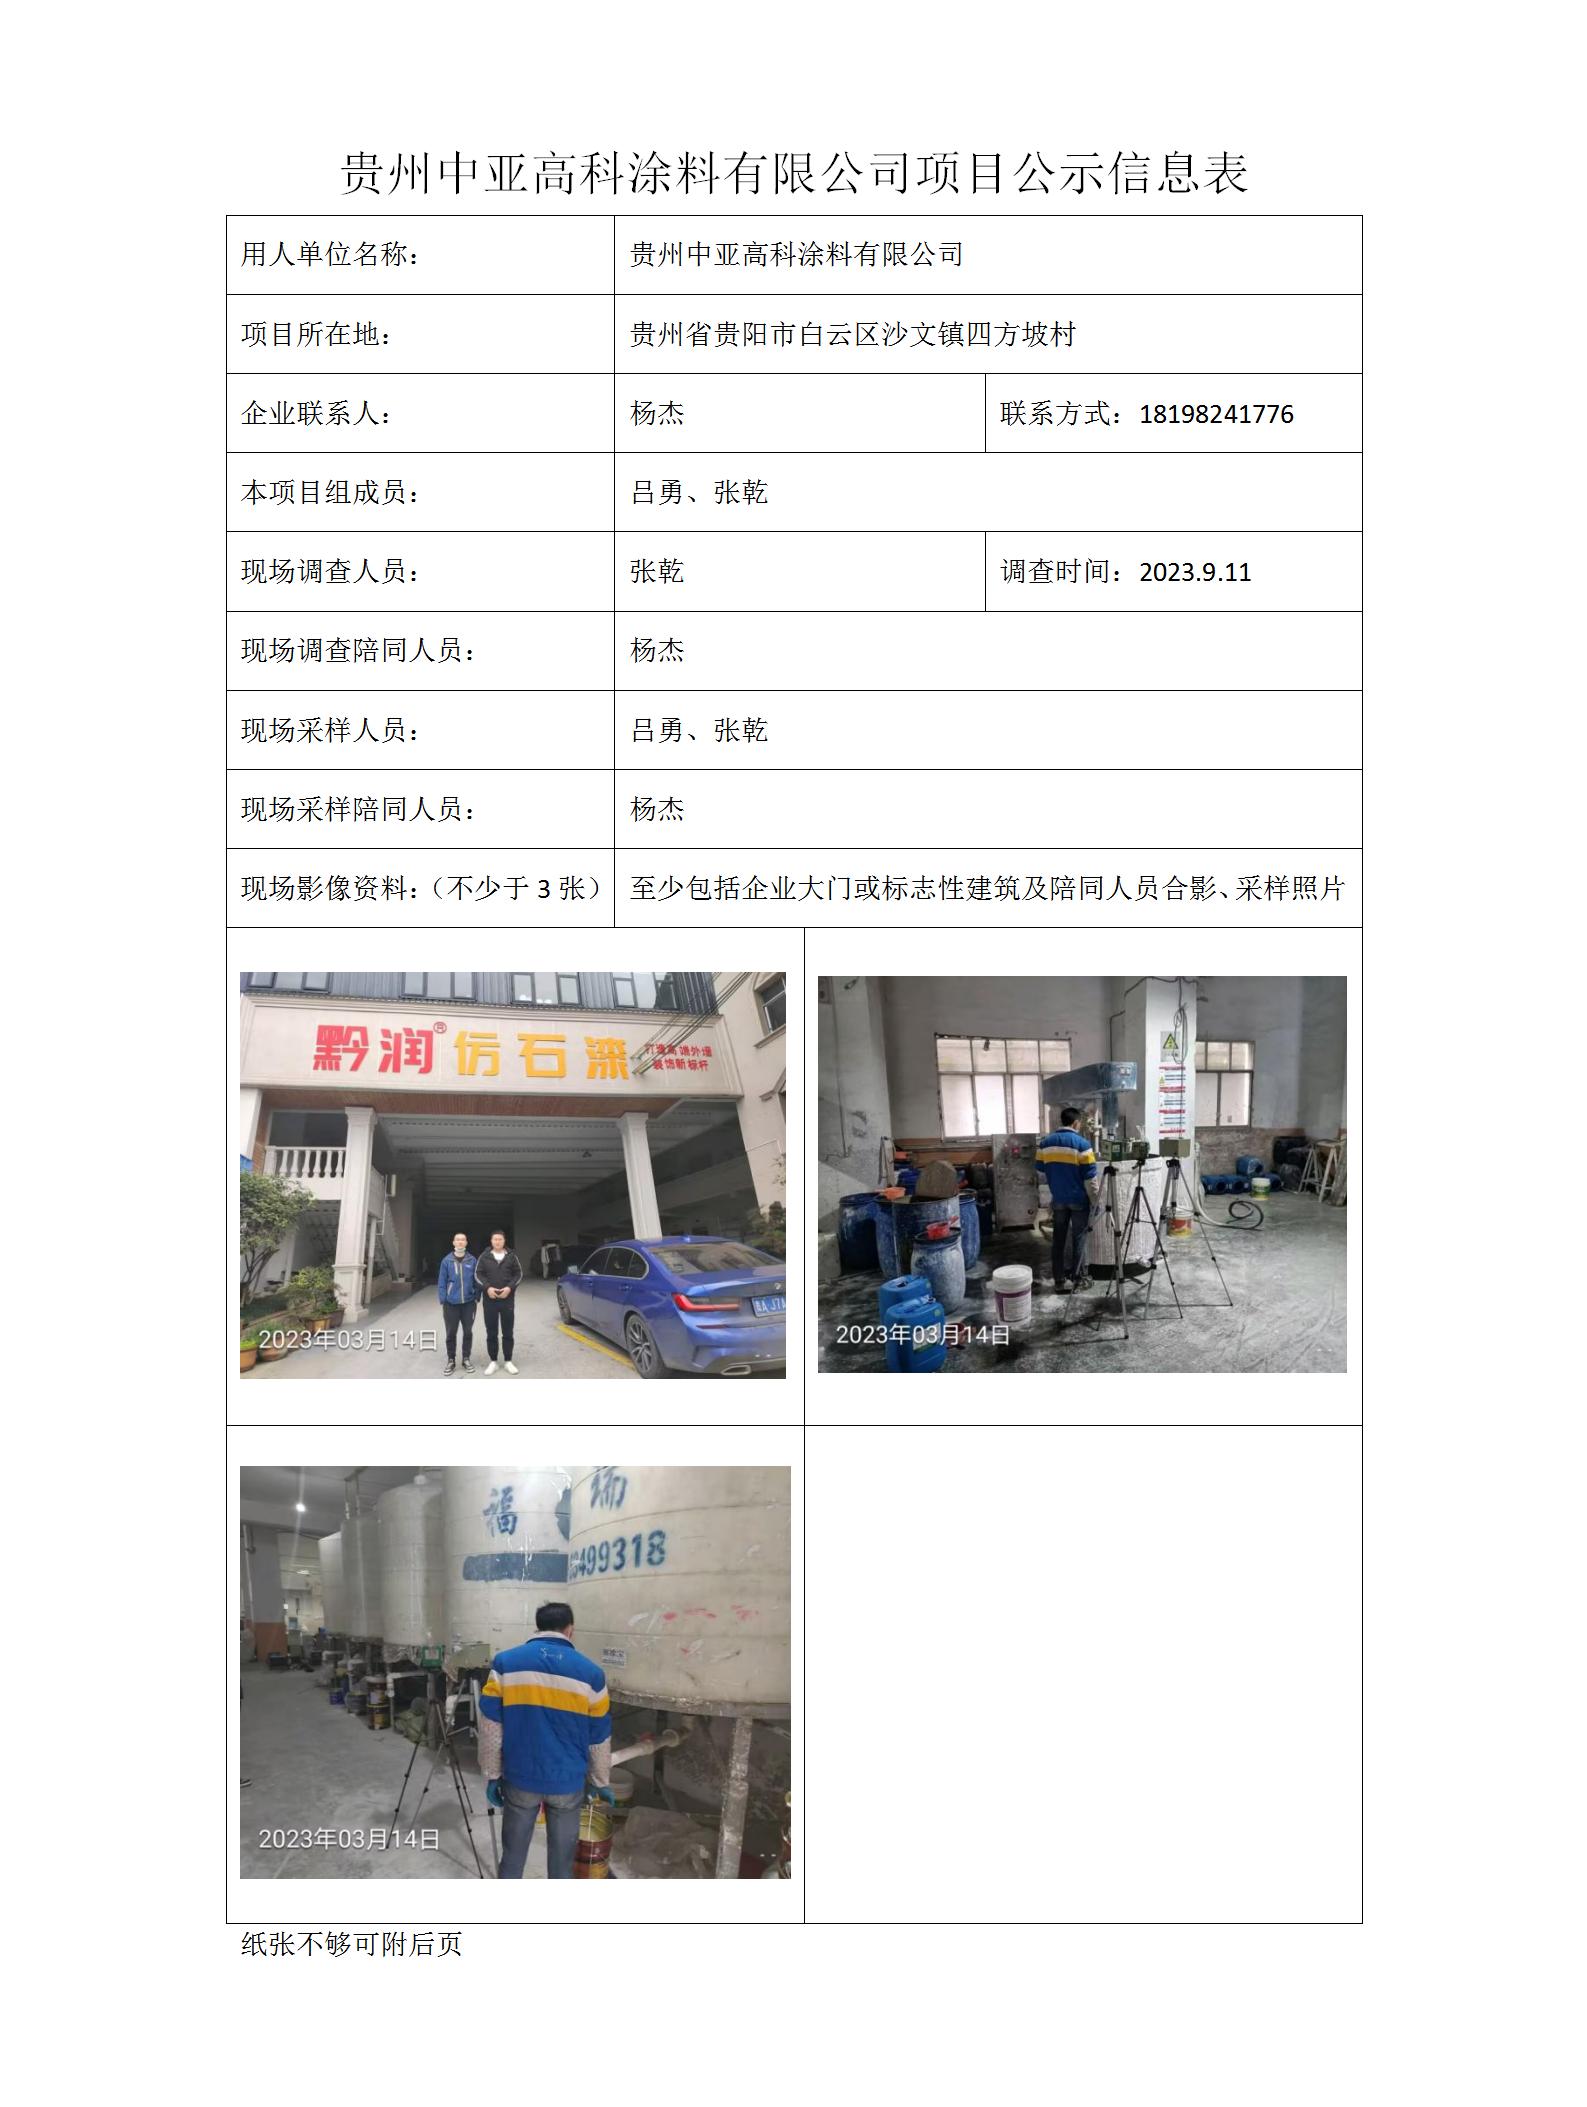 项目公示信息表-刘林-中亚高科_01.jpg